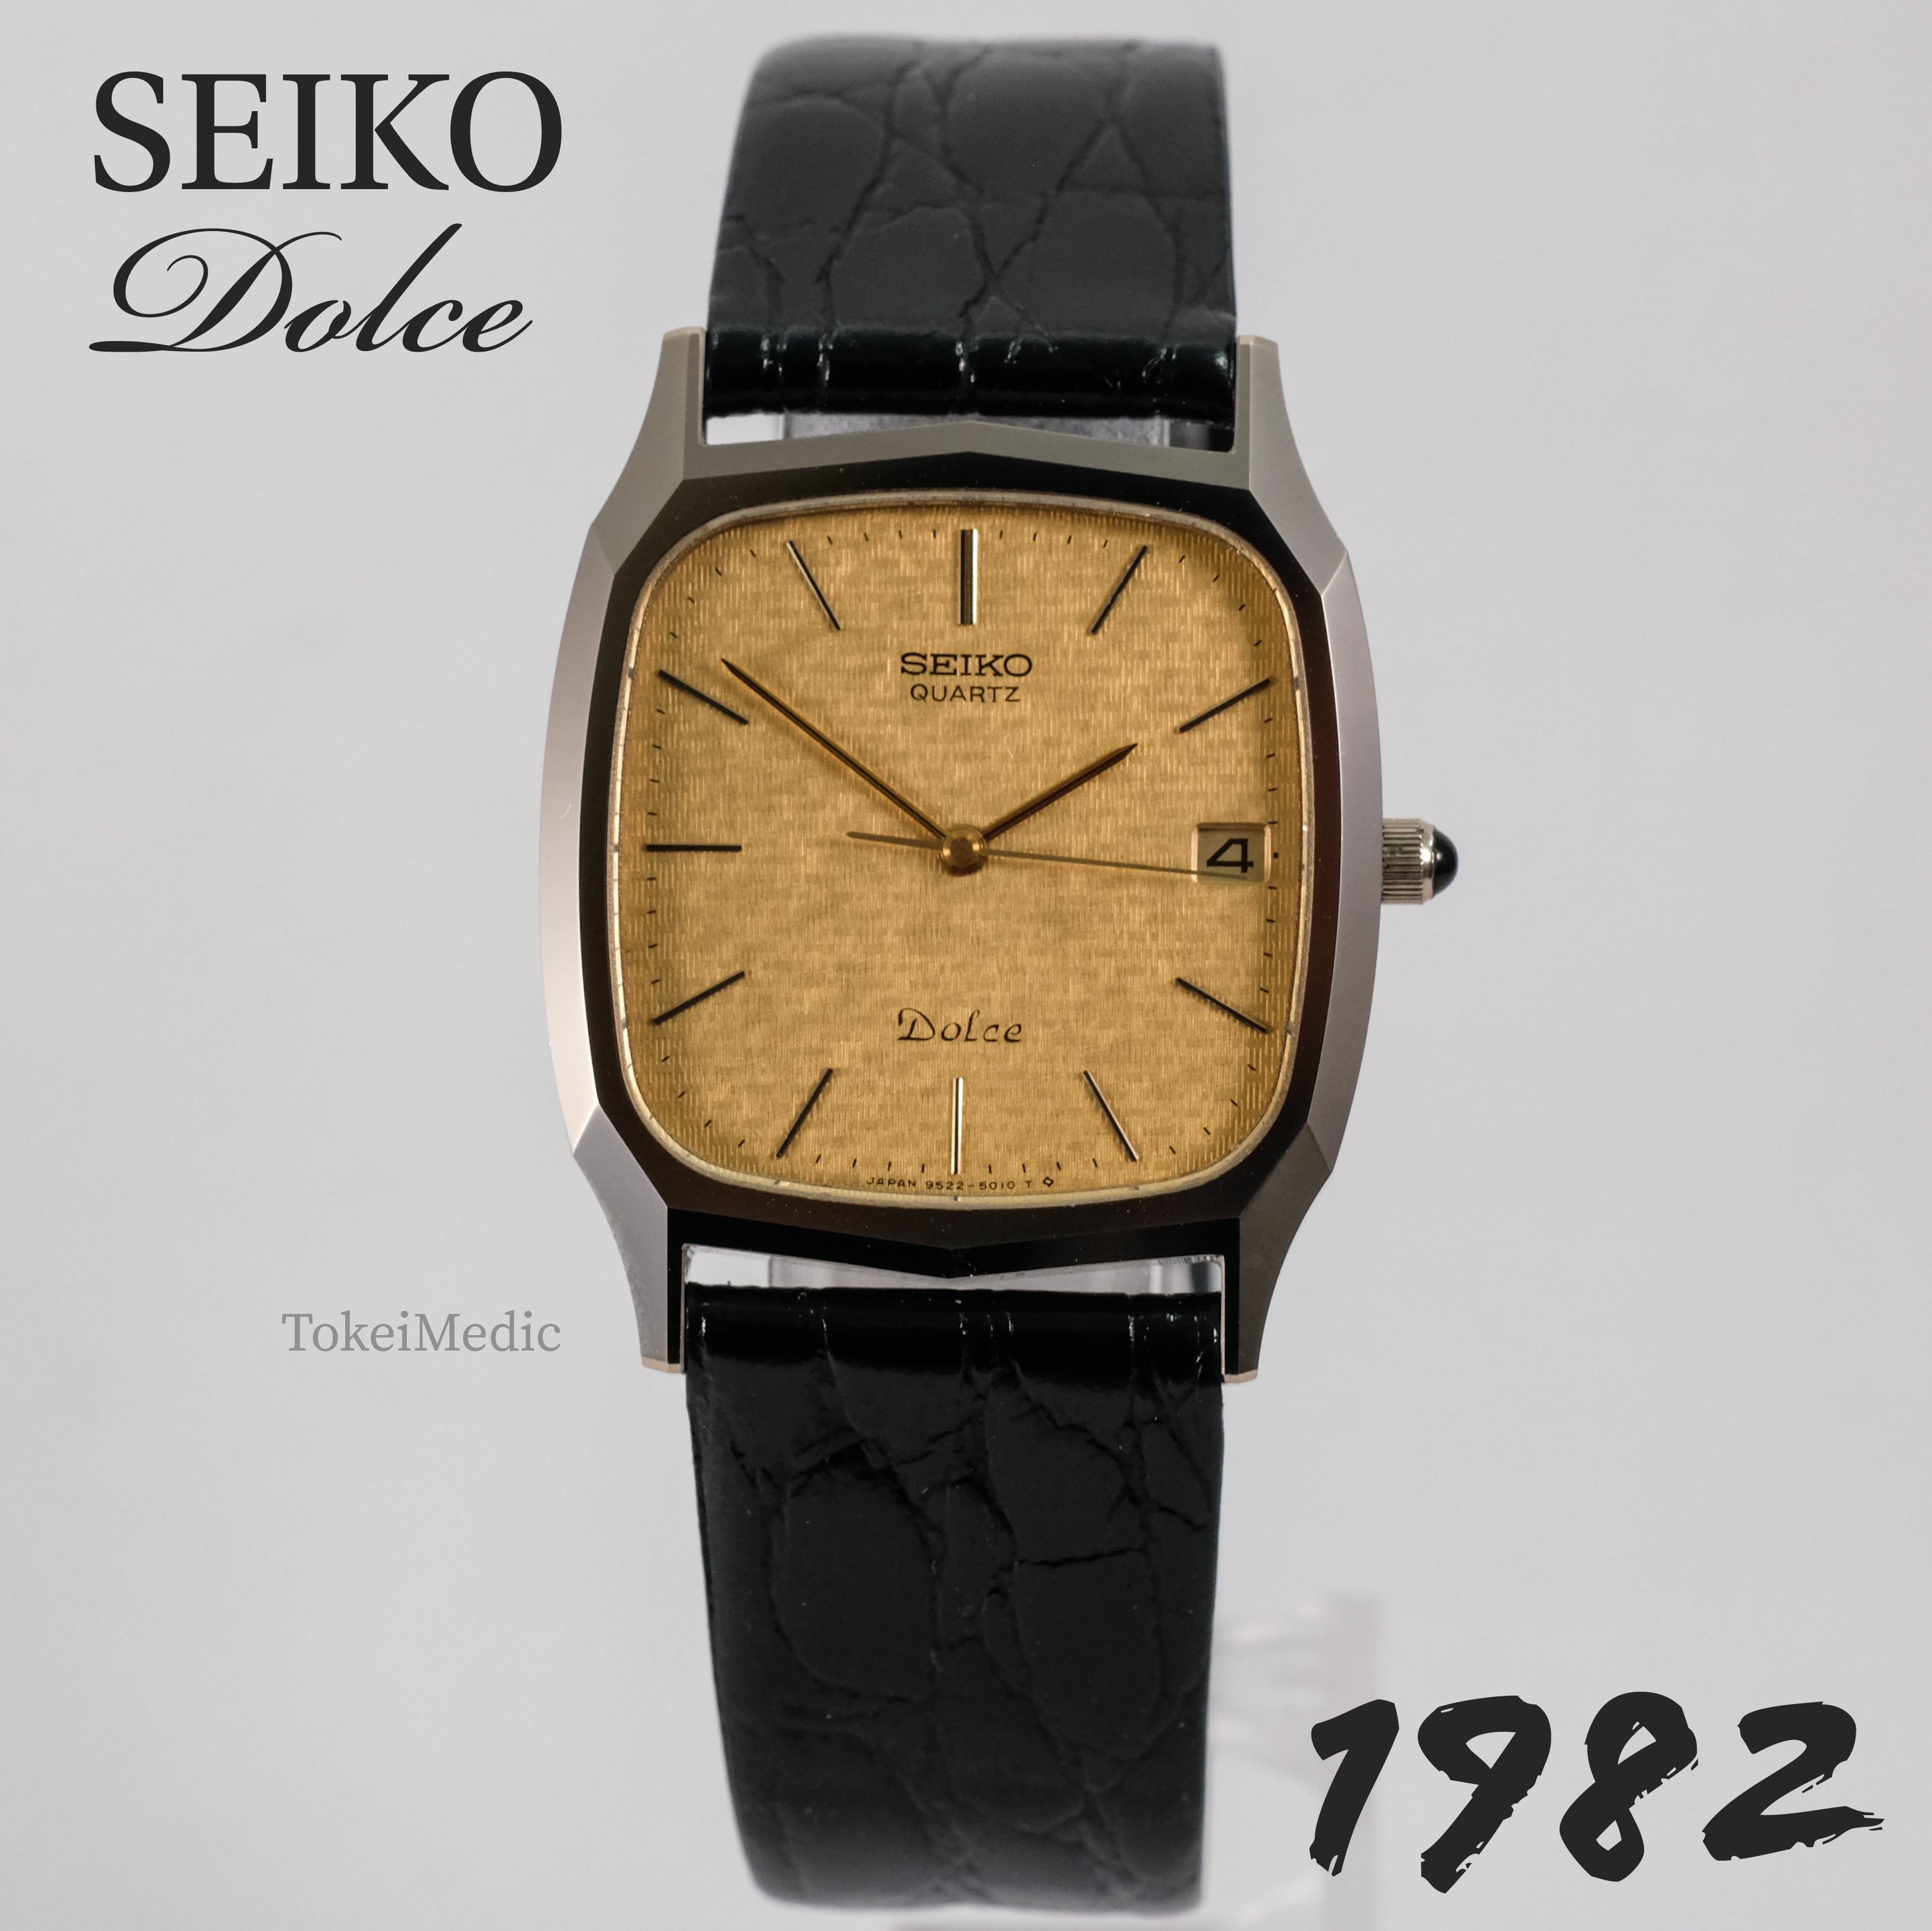 1982 Seiko Dolce 9522-5010